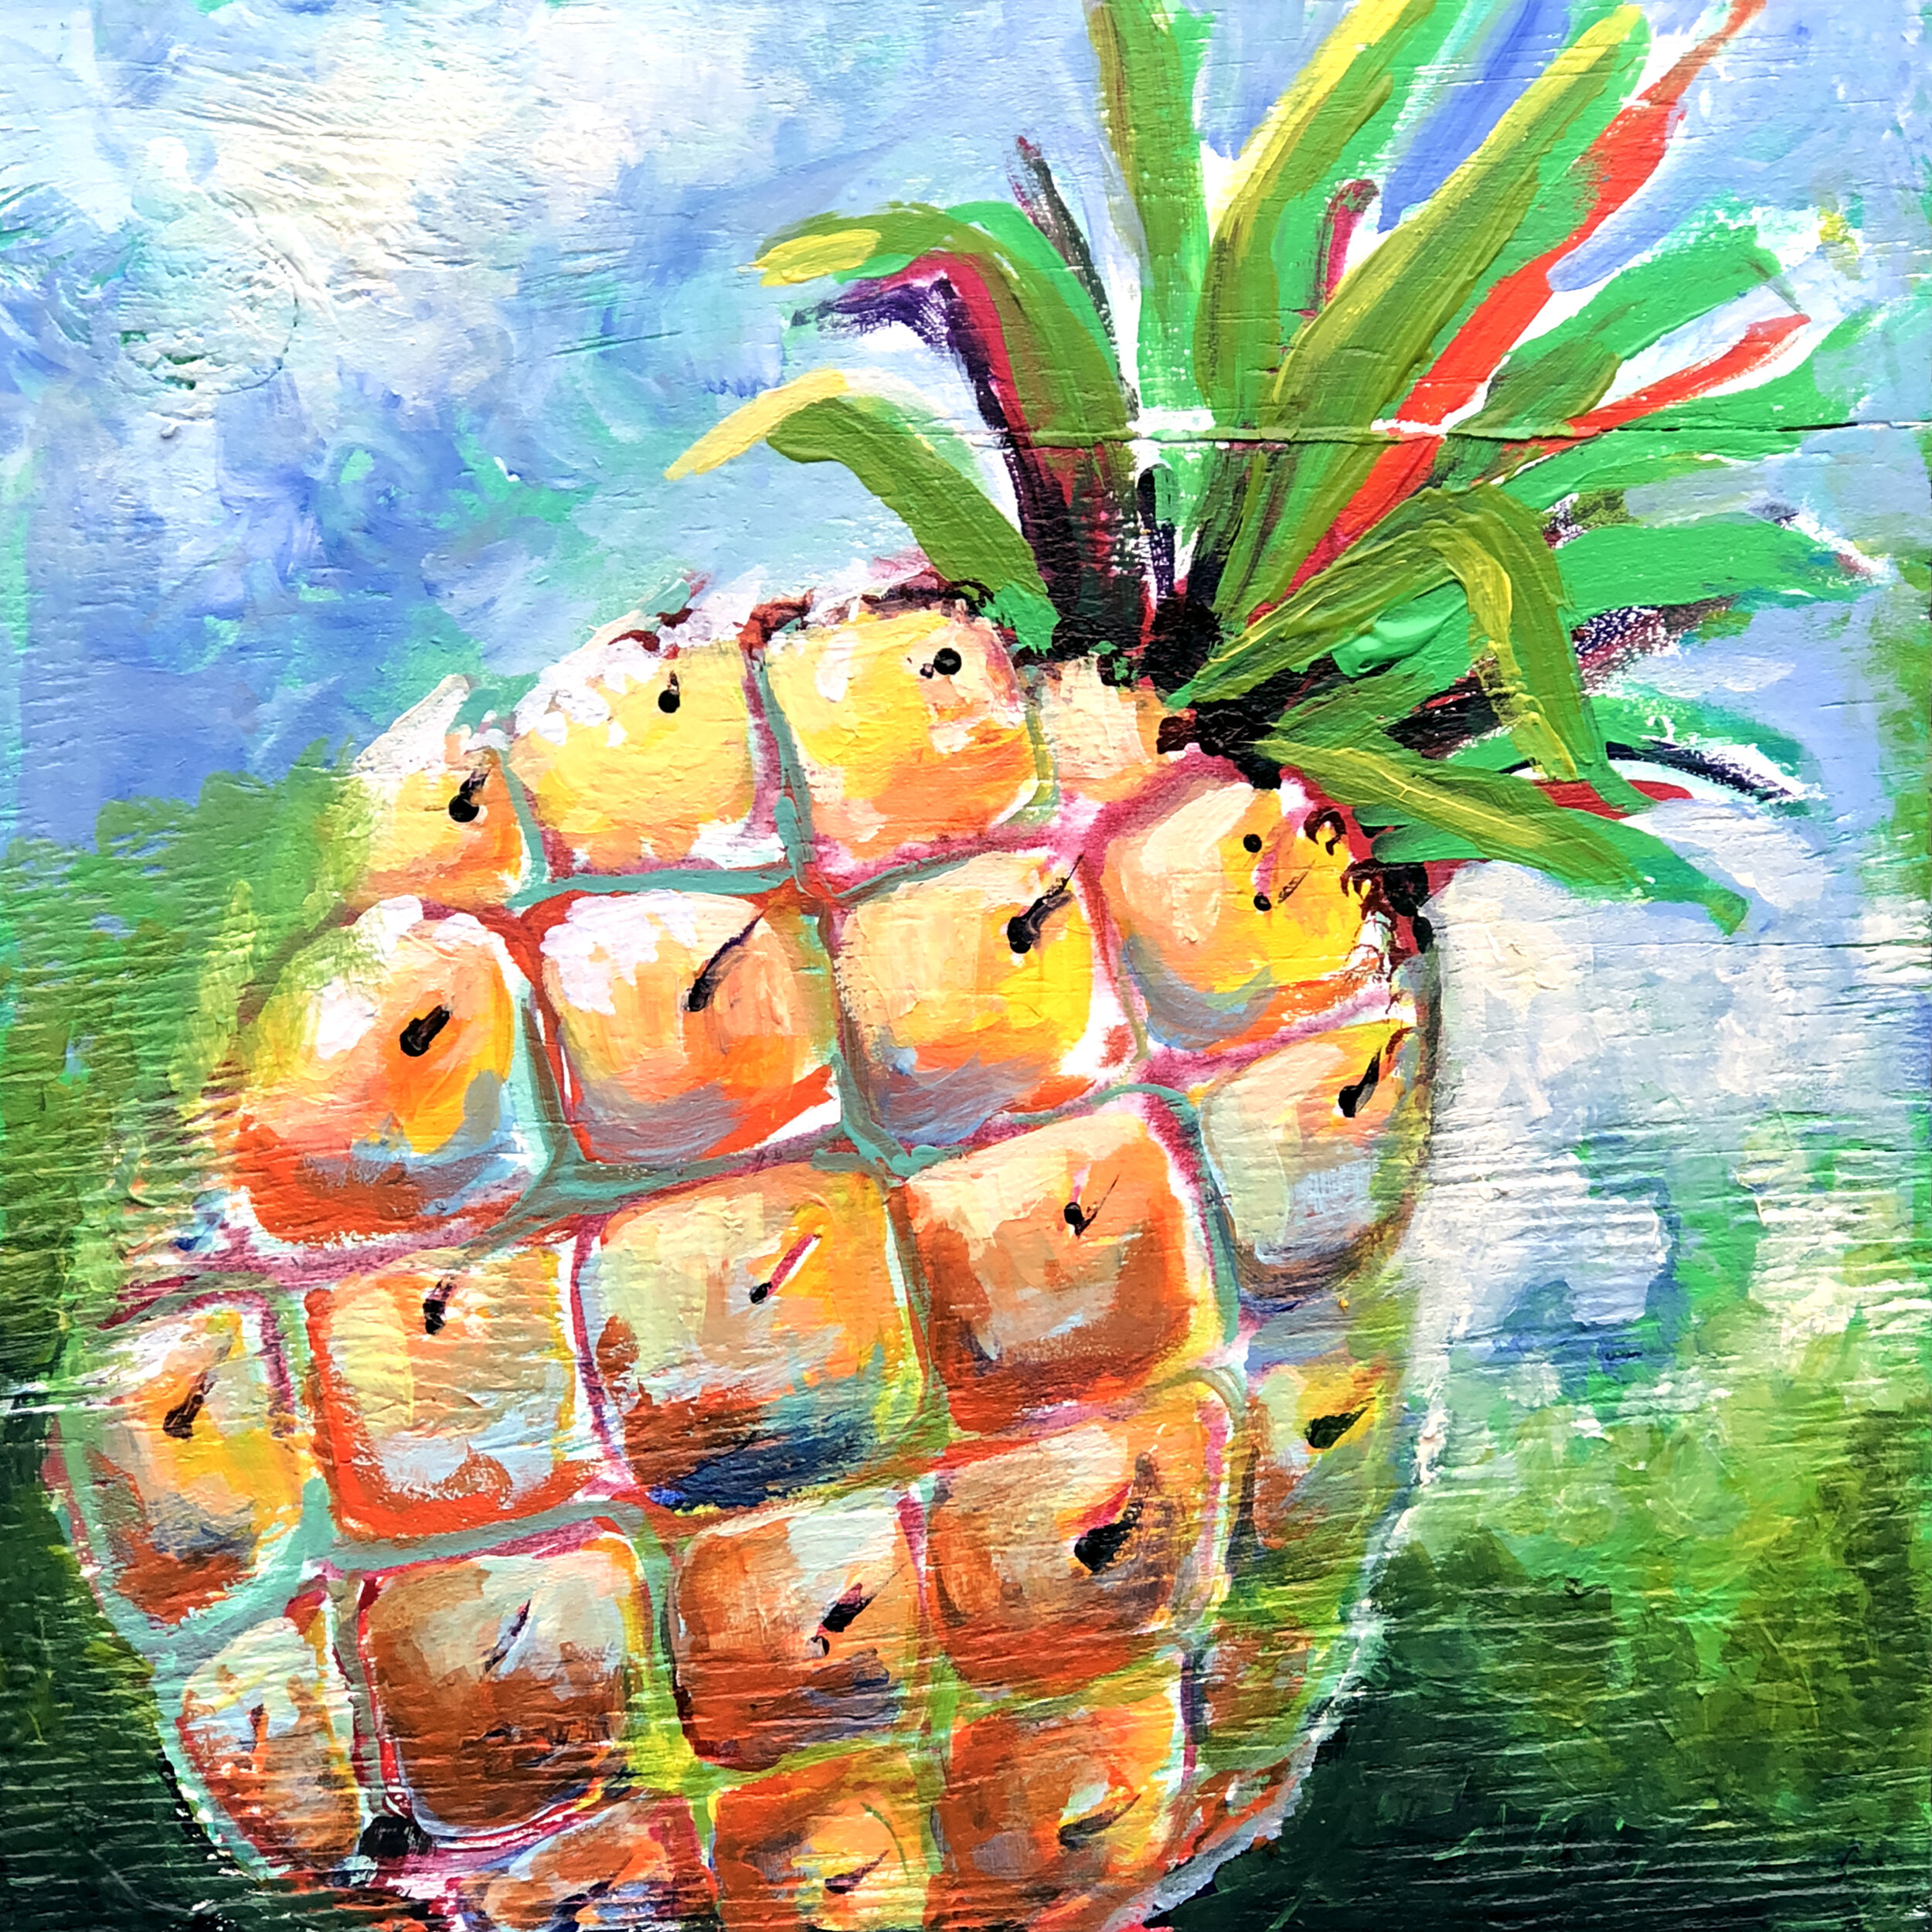 Pineapple Art Kit 12 x 12 — Ellen's Art / Blessed and Broken Creations